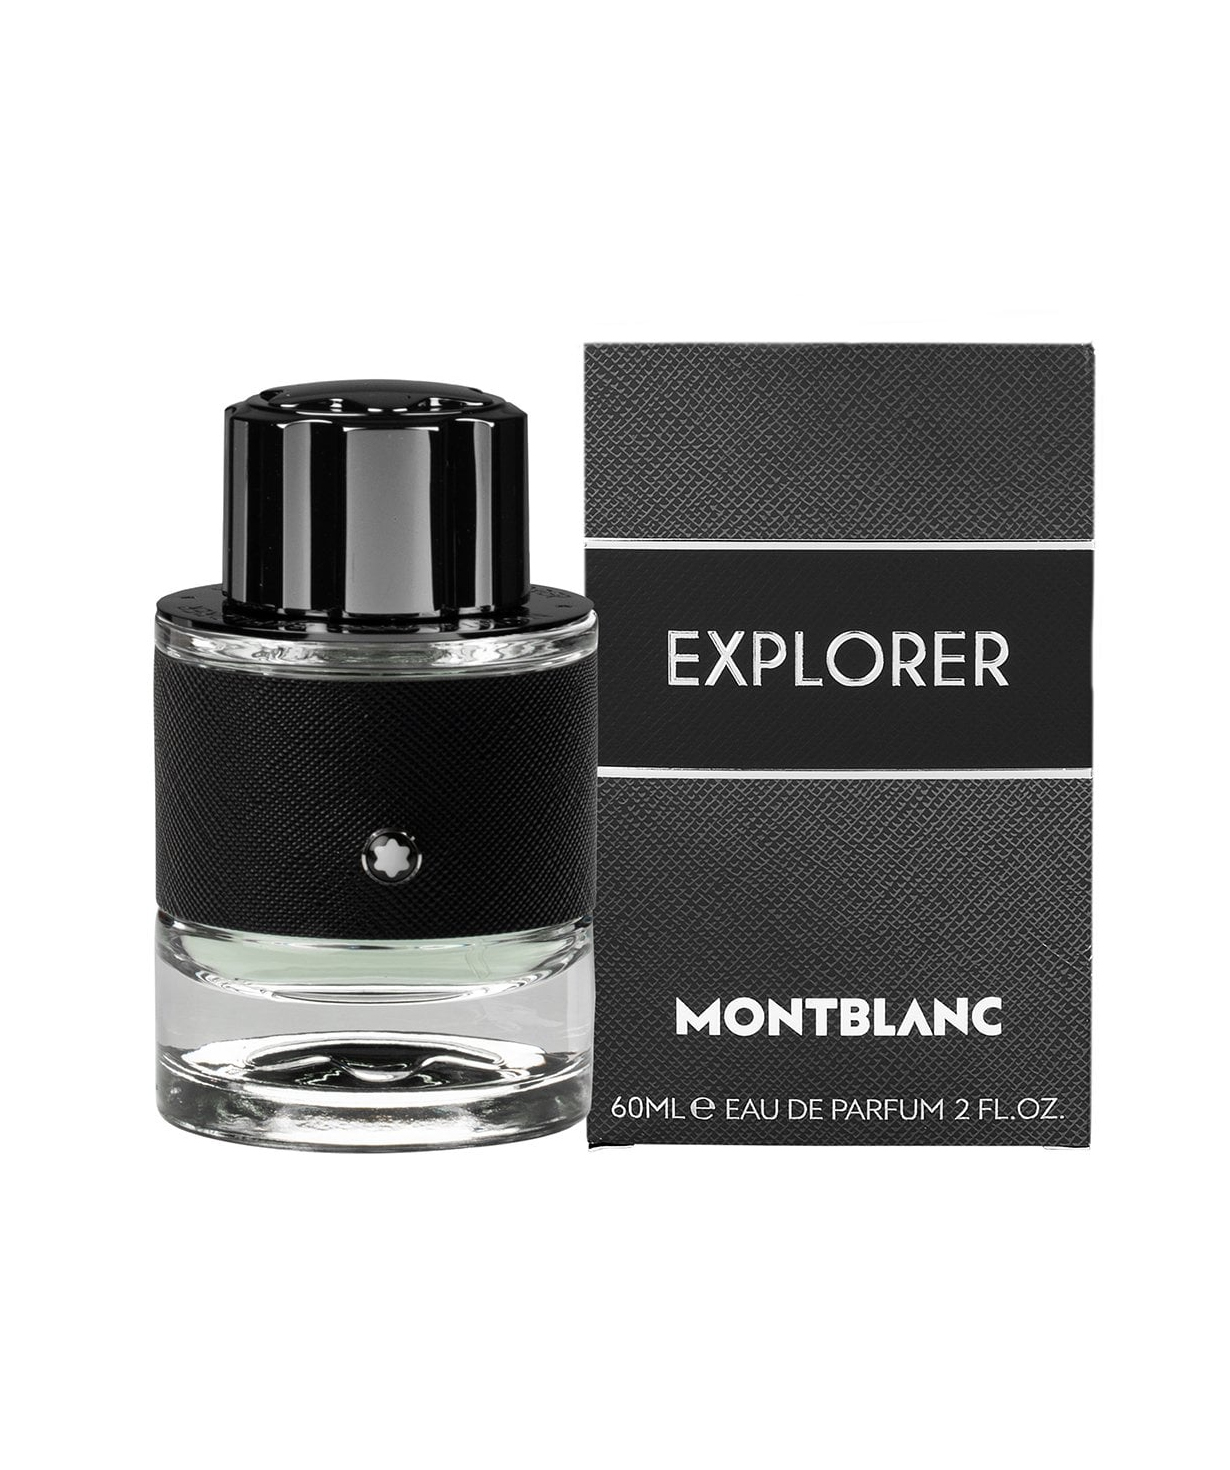 Perfume «Montblanc» Explorer, for men, 60 ml